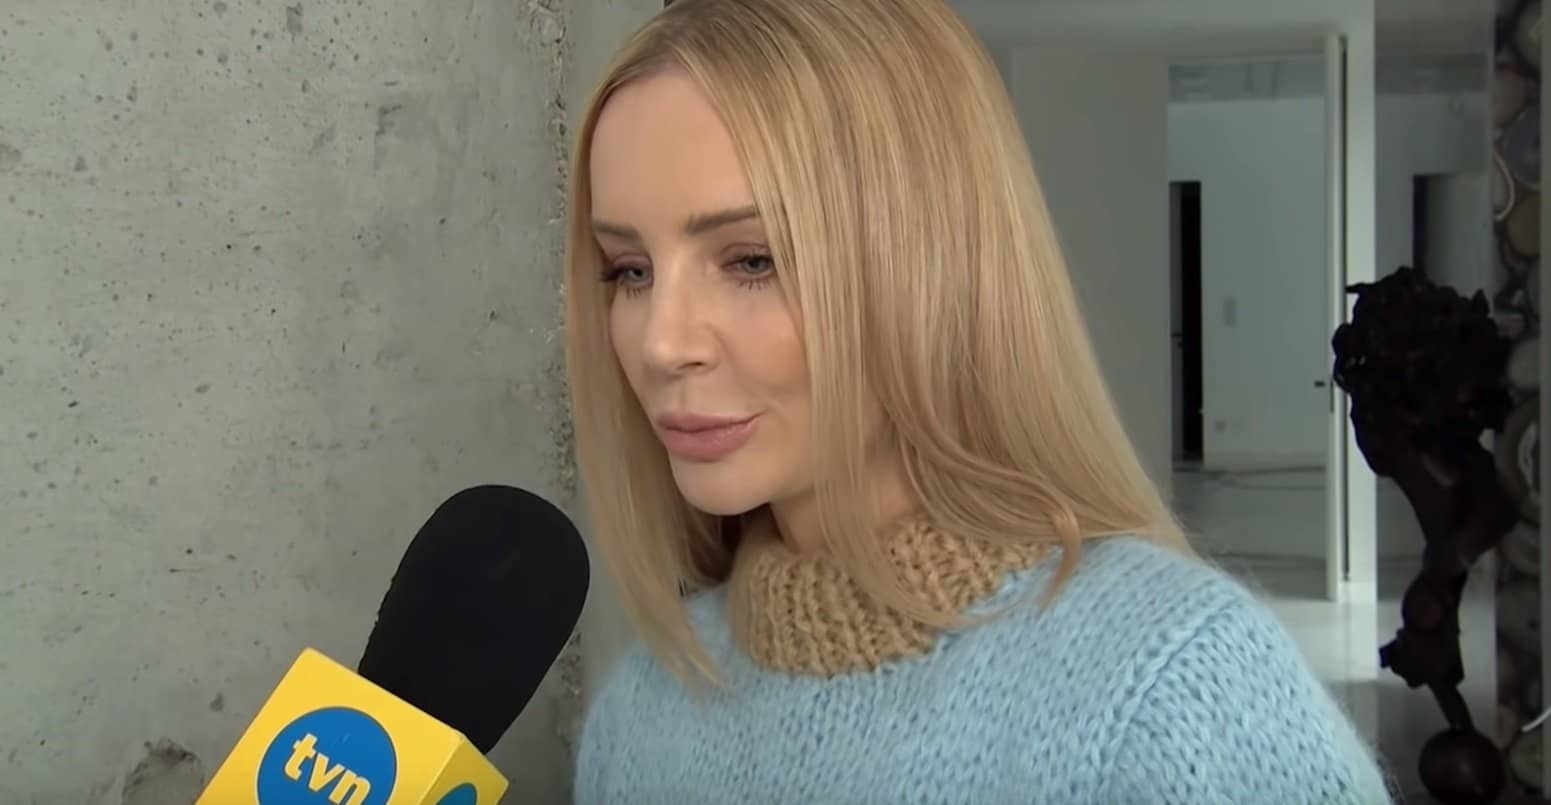 Agnieszka Woźniak-Starak (kiedyś TVN) często wspomina małżeństwo, teraz wyznała prawdę o mężu jakim był tragicznie zmarły reżyser Piotr Starak.